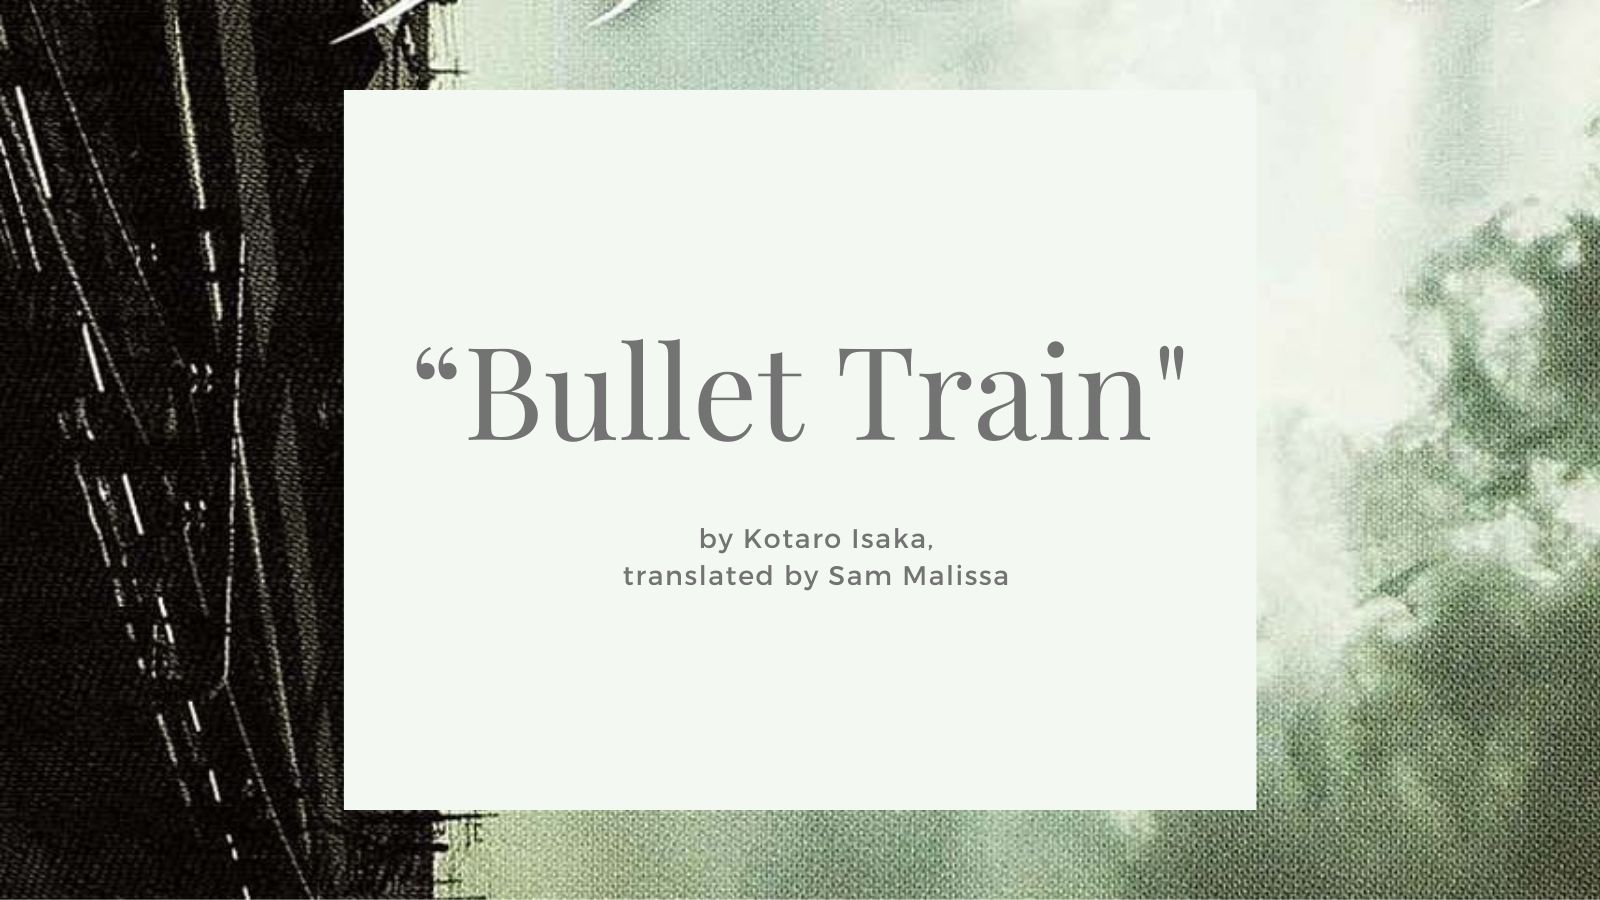 Bullet train-tokyo-japan-metropolis